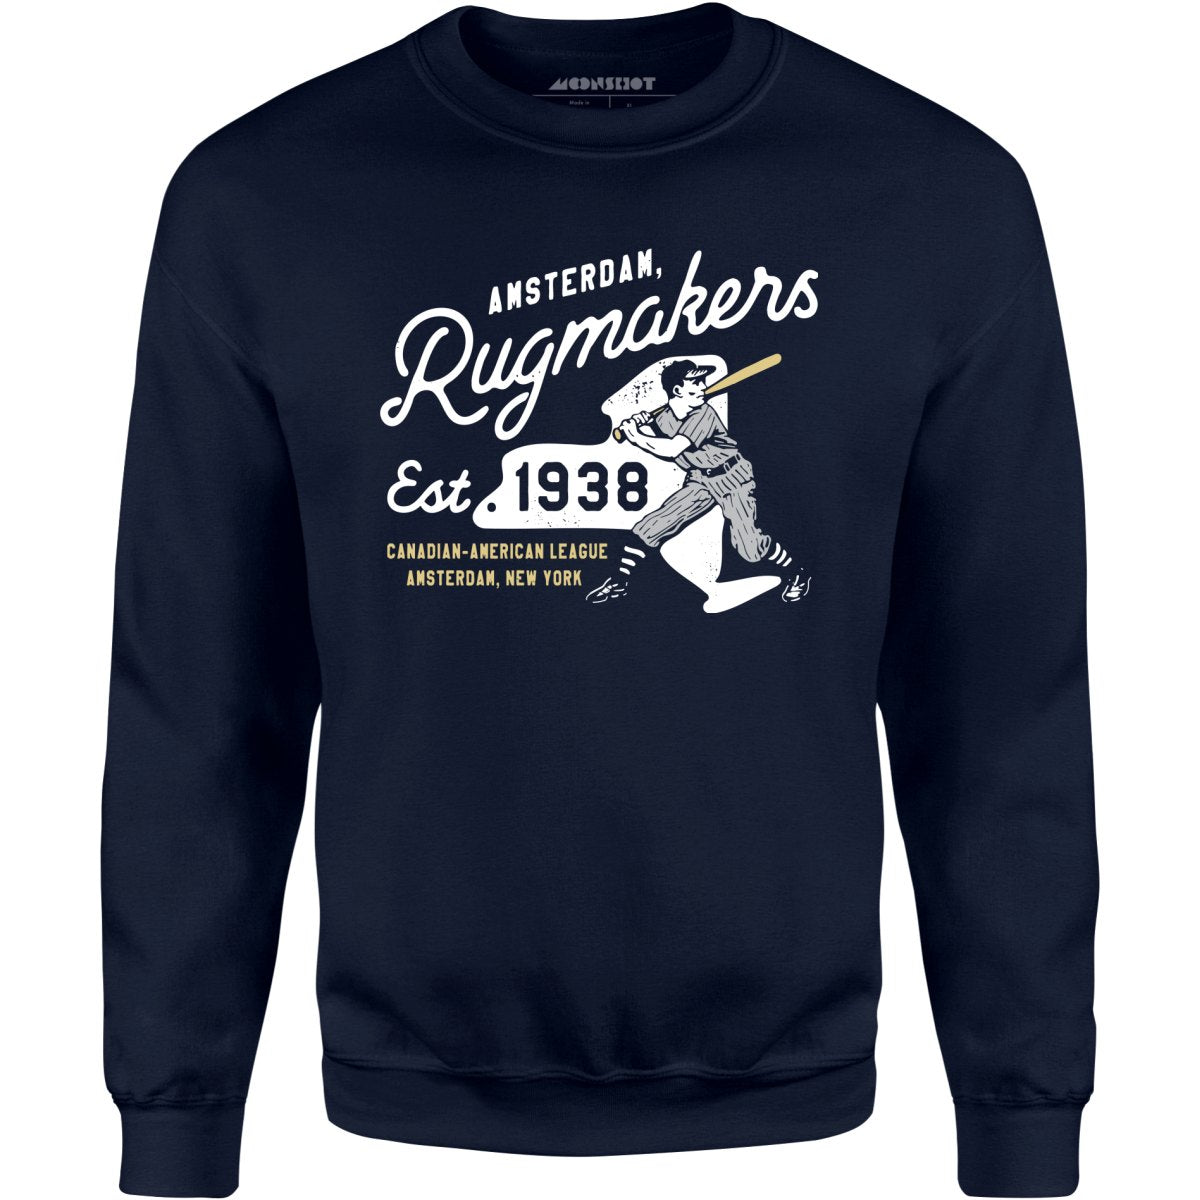 Amsterdam Rugmakers - New York - Vintage Defunct Baseball Teams - Unisex Sweatshirt